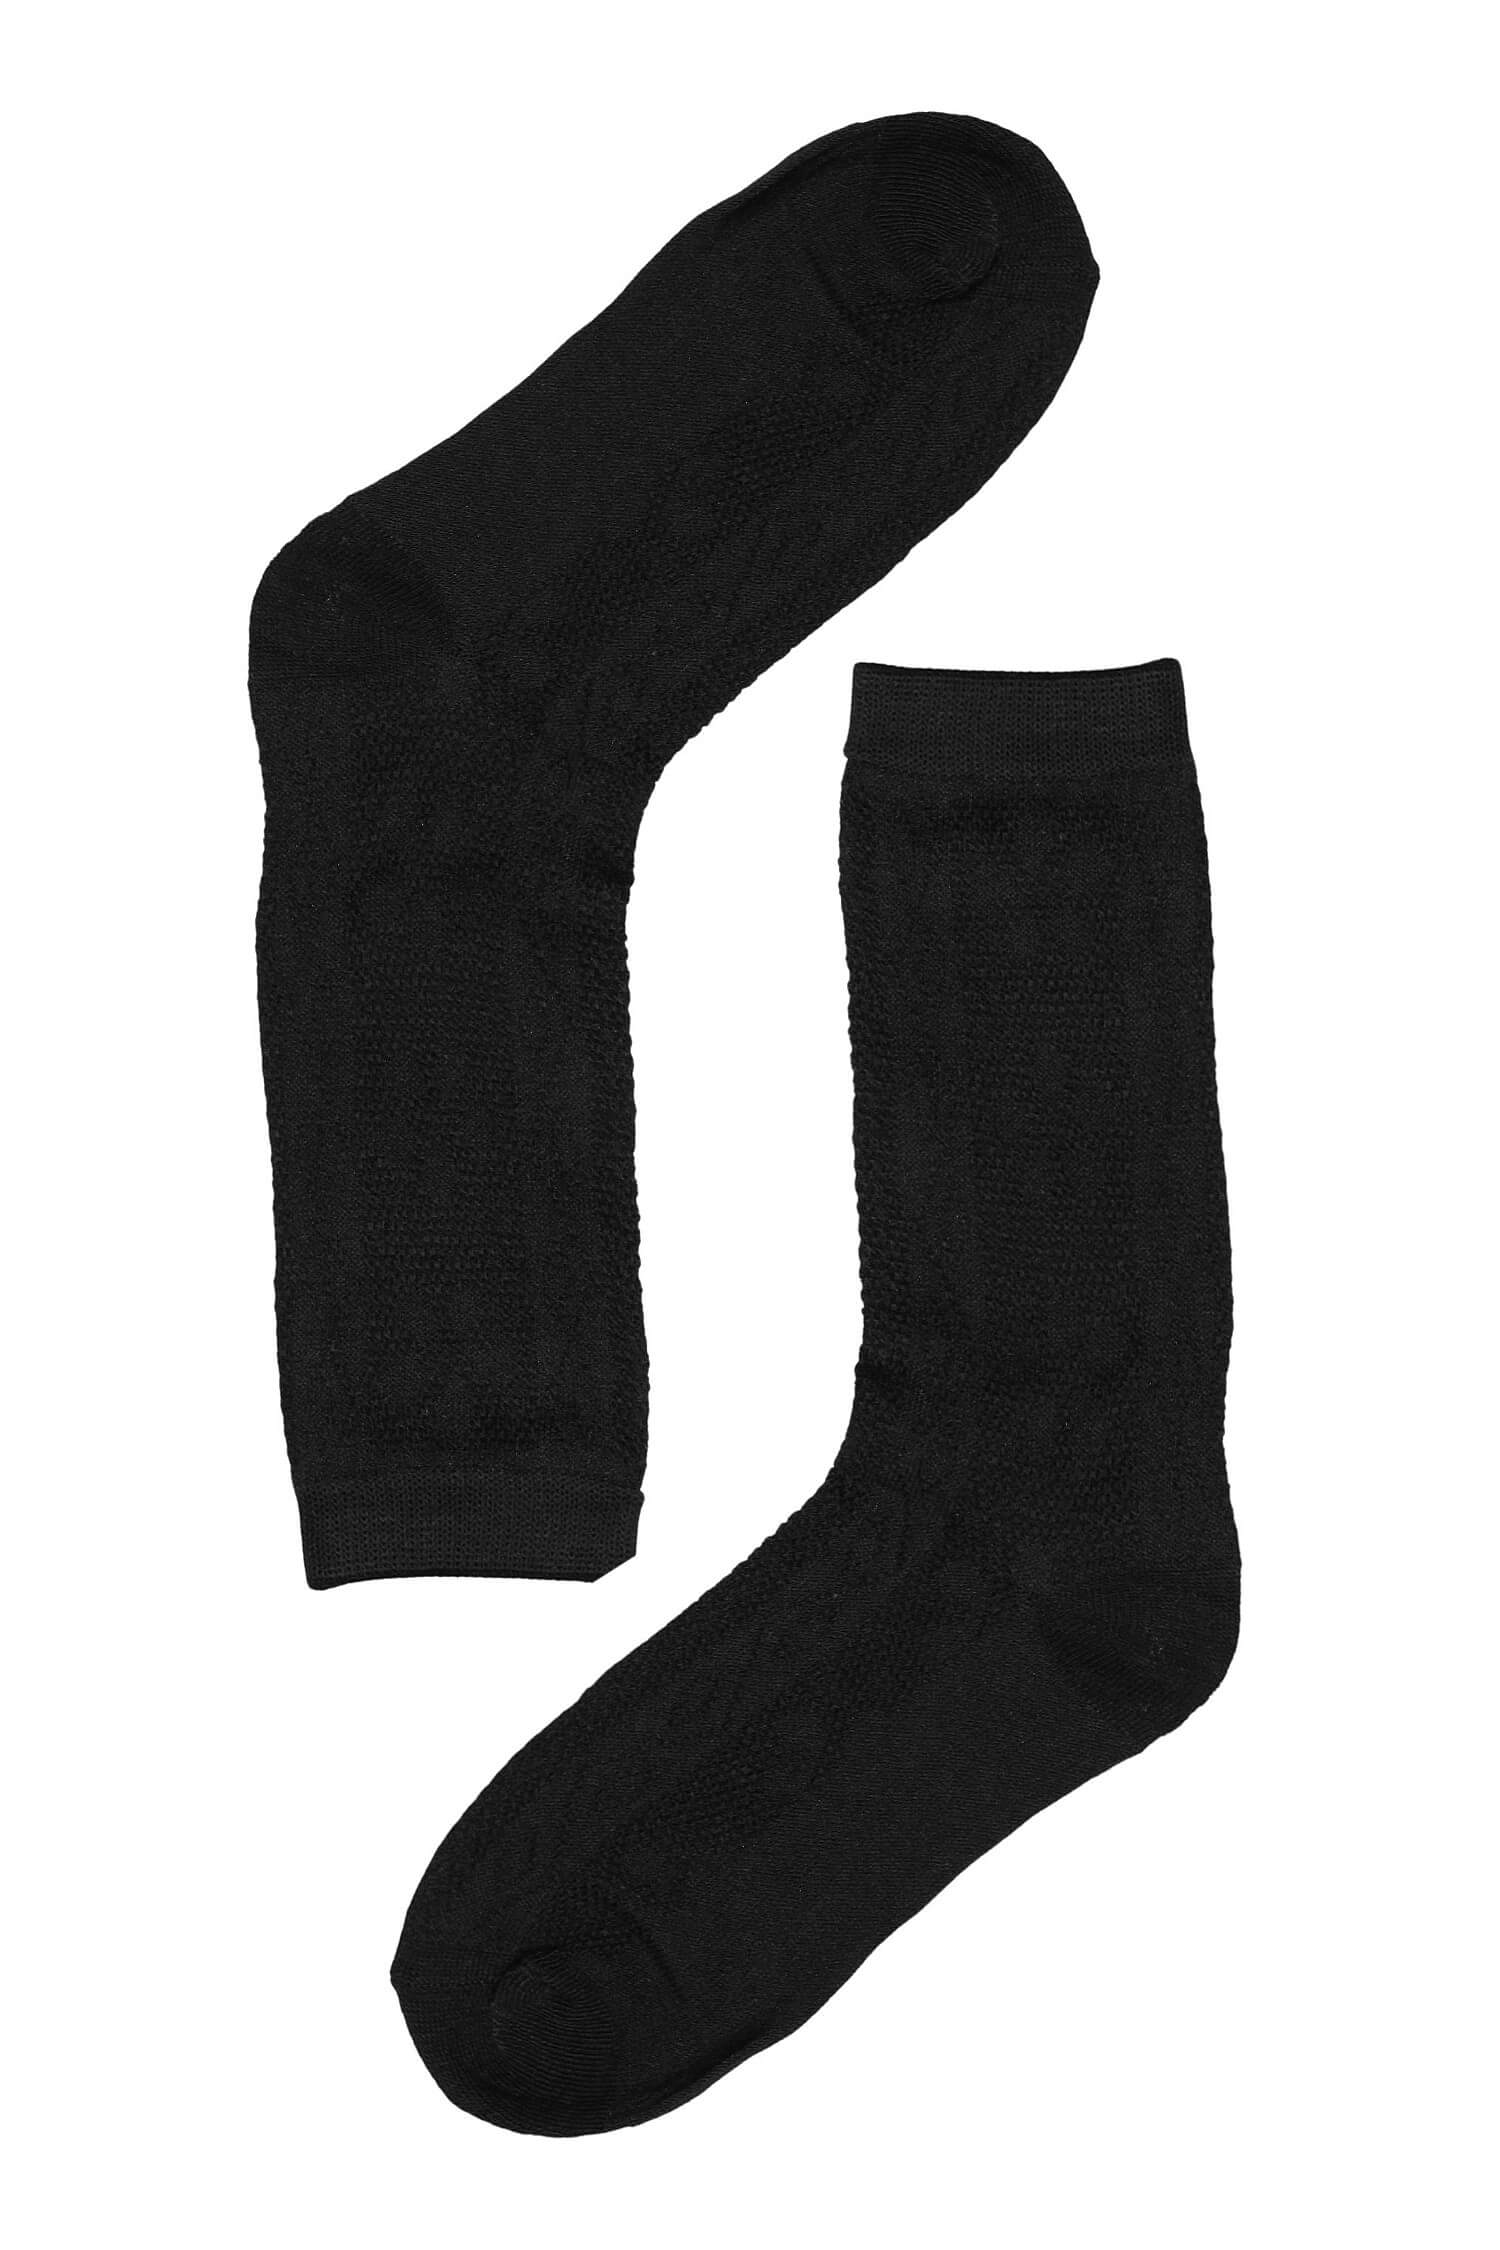 Vzorované dámské ponožky bavlna SK-236 39-41 černá